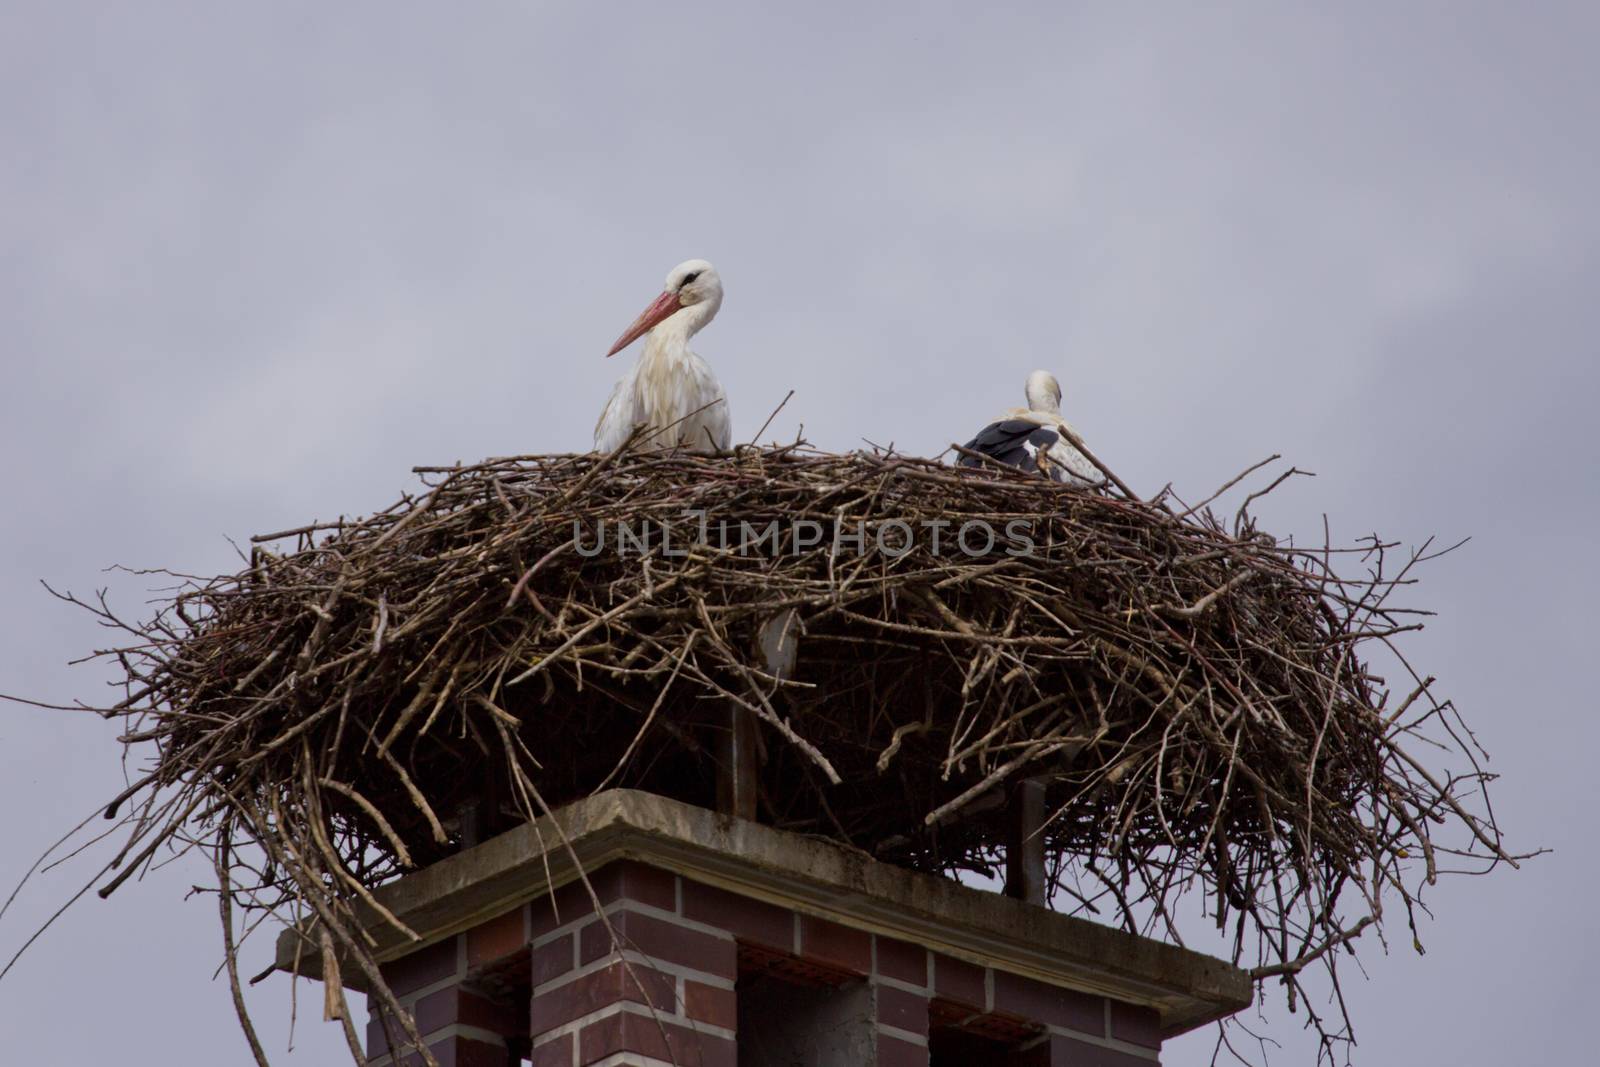 Stork family in storks nest